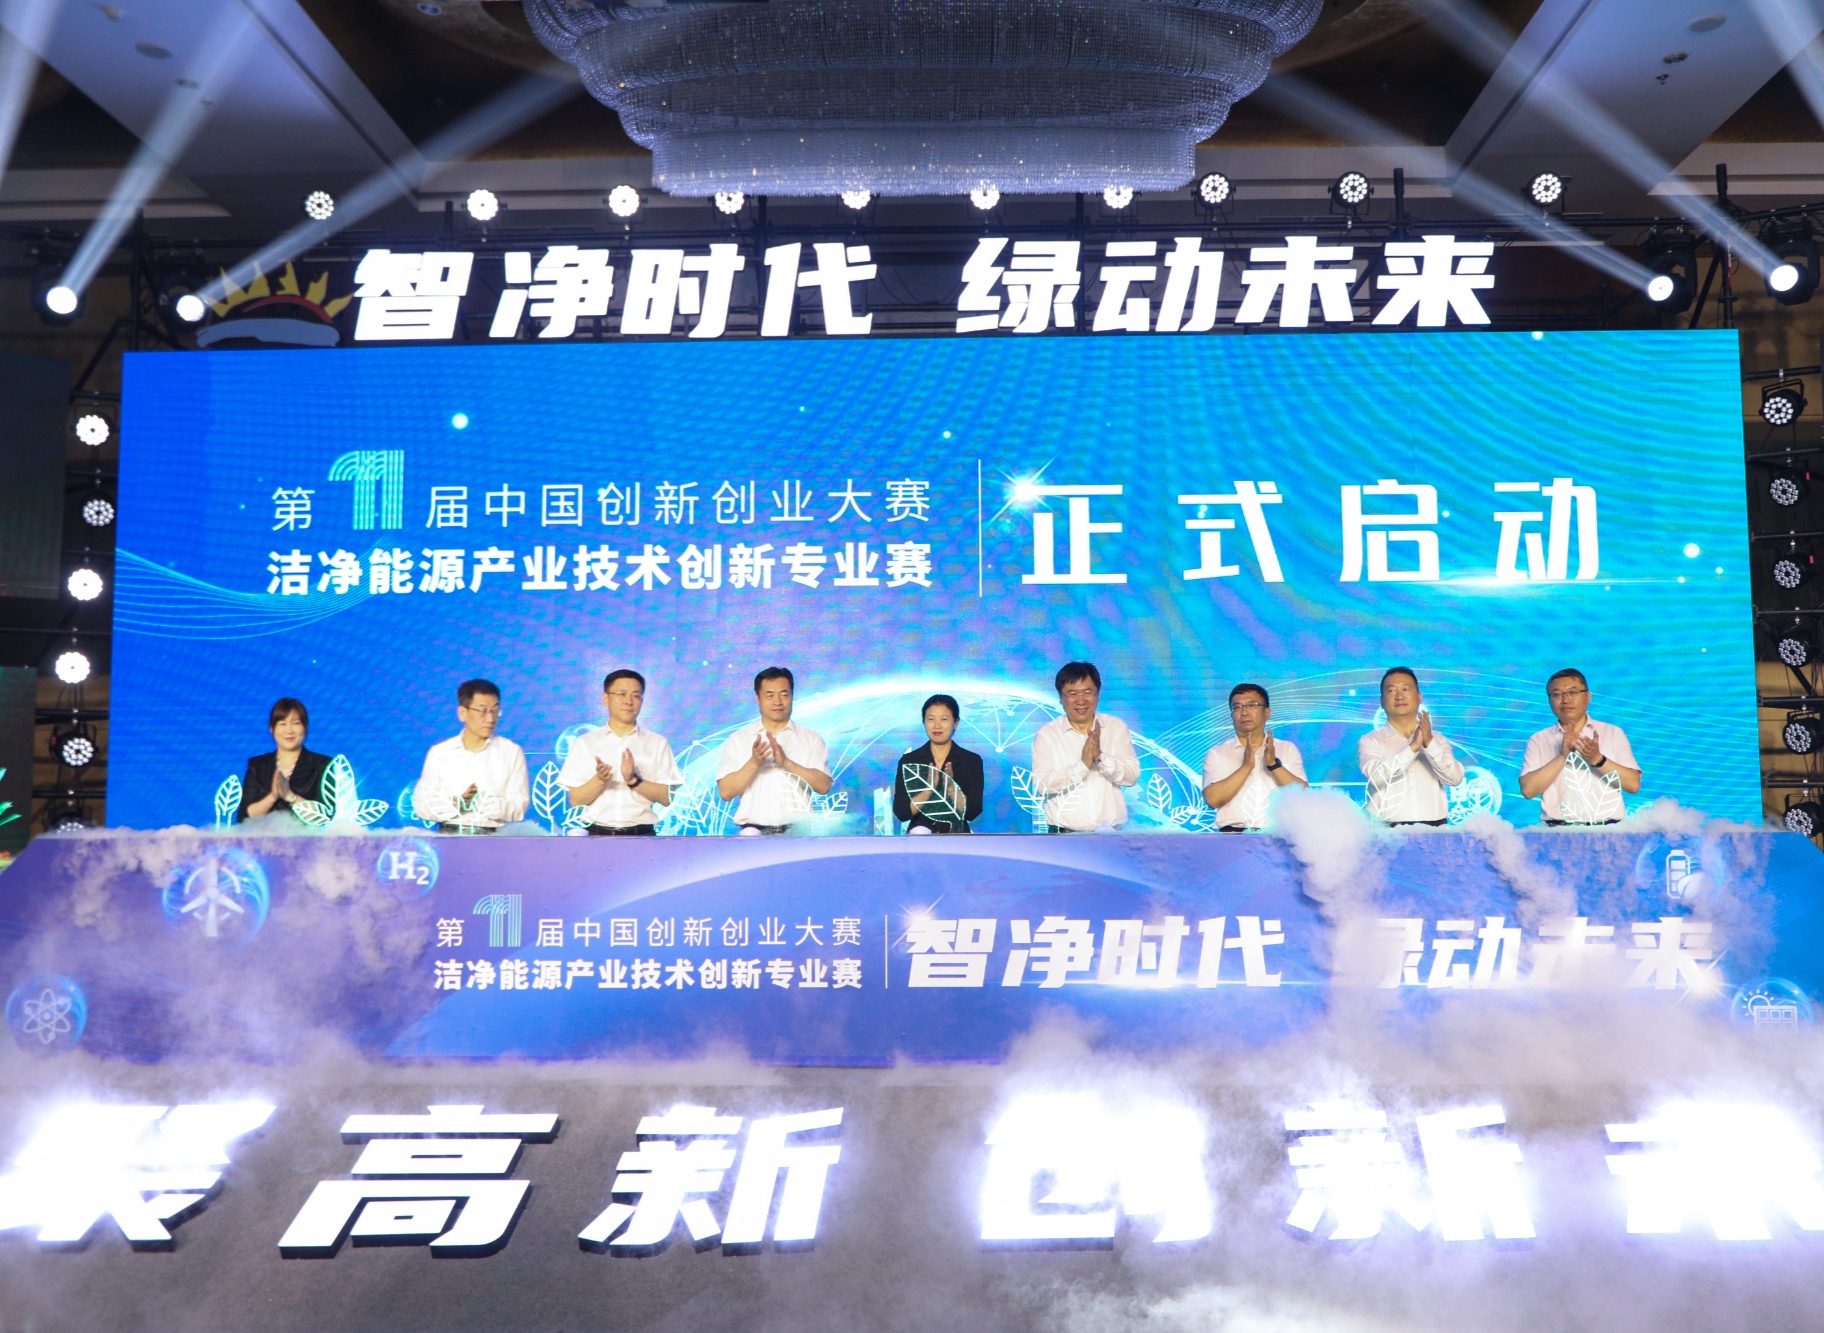 聚享游第十一届中国创新创业大赛洁净能源专业赛启动 聚焦可再生能源多能互补与综合利用(图1)